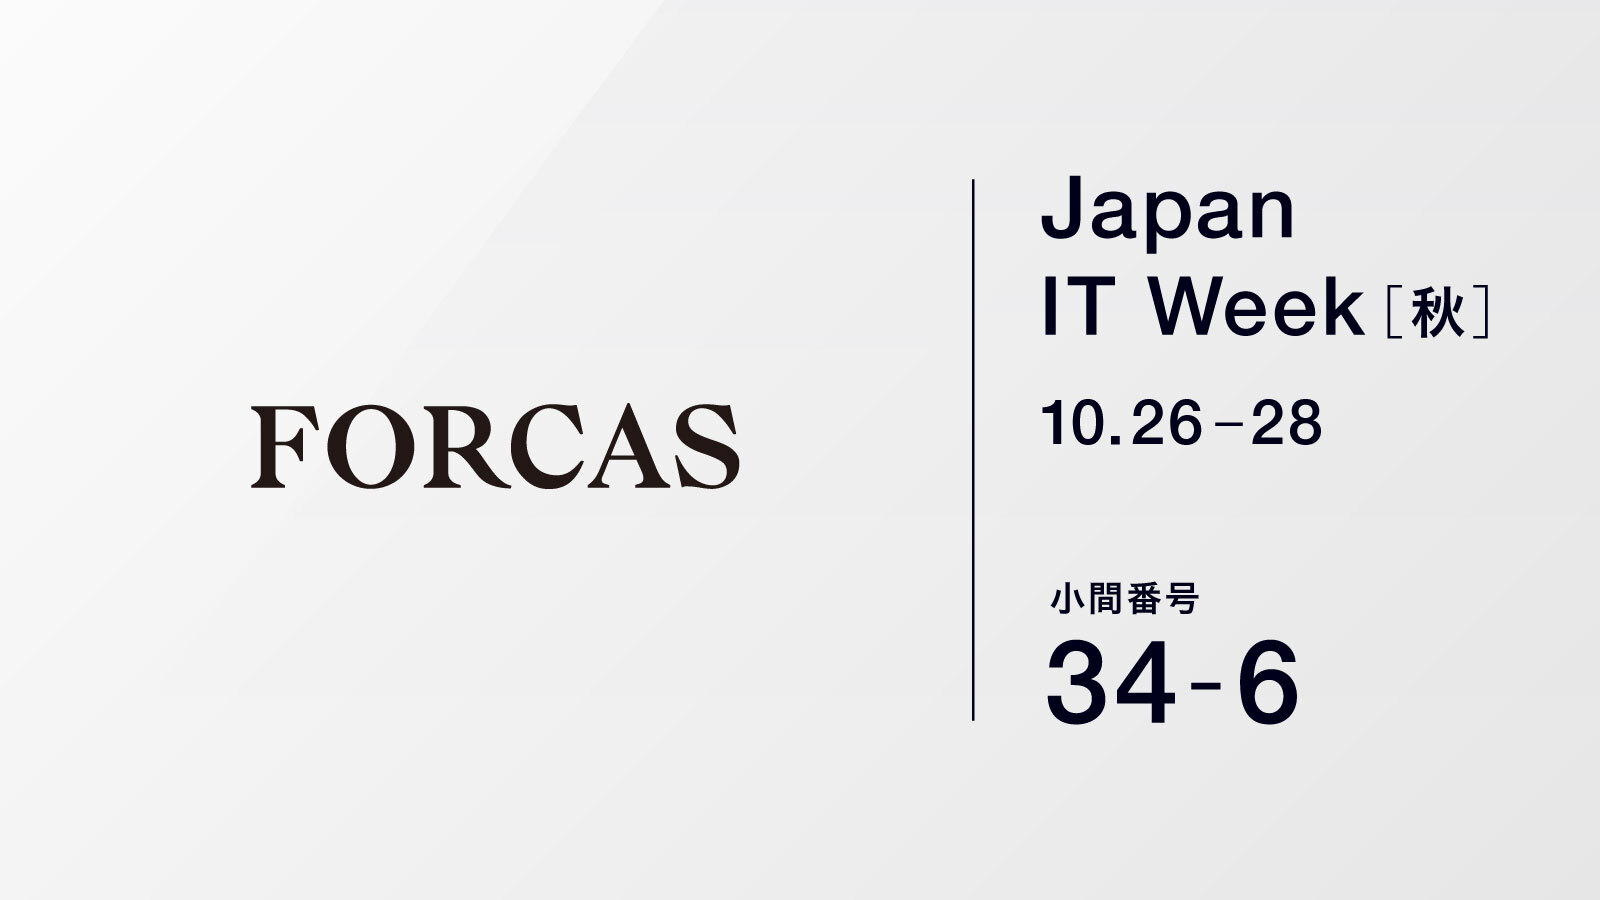 FORCASはオフライン展示会 Japan IT Week 秋（10/26-28、幕張メッセ）に出展します